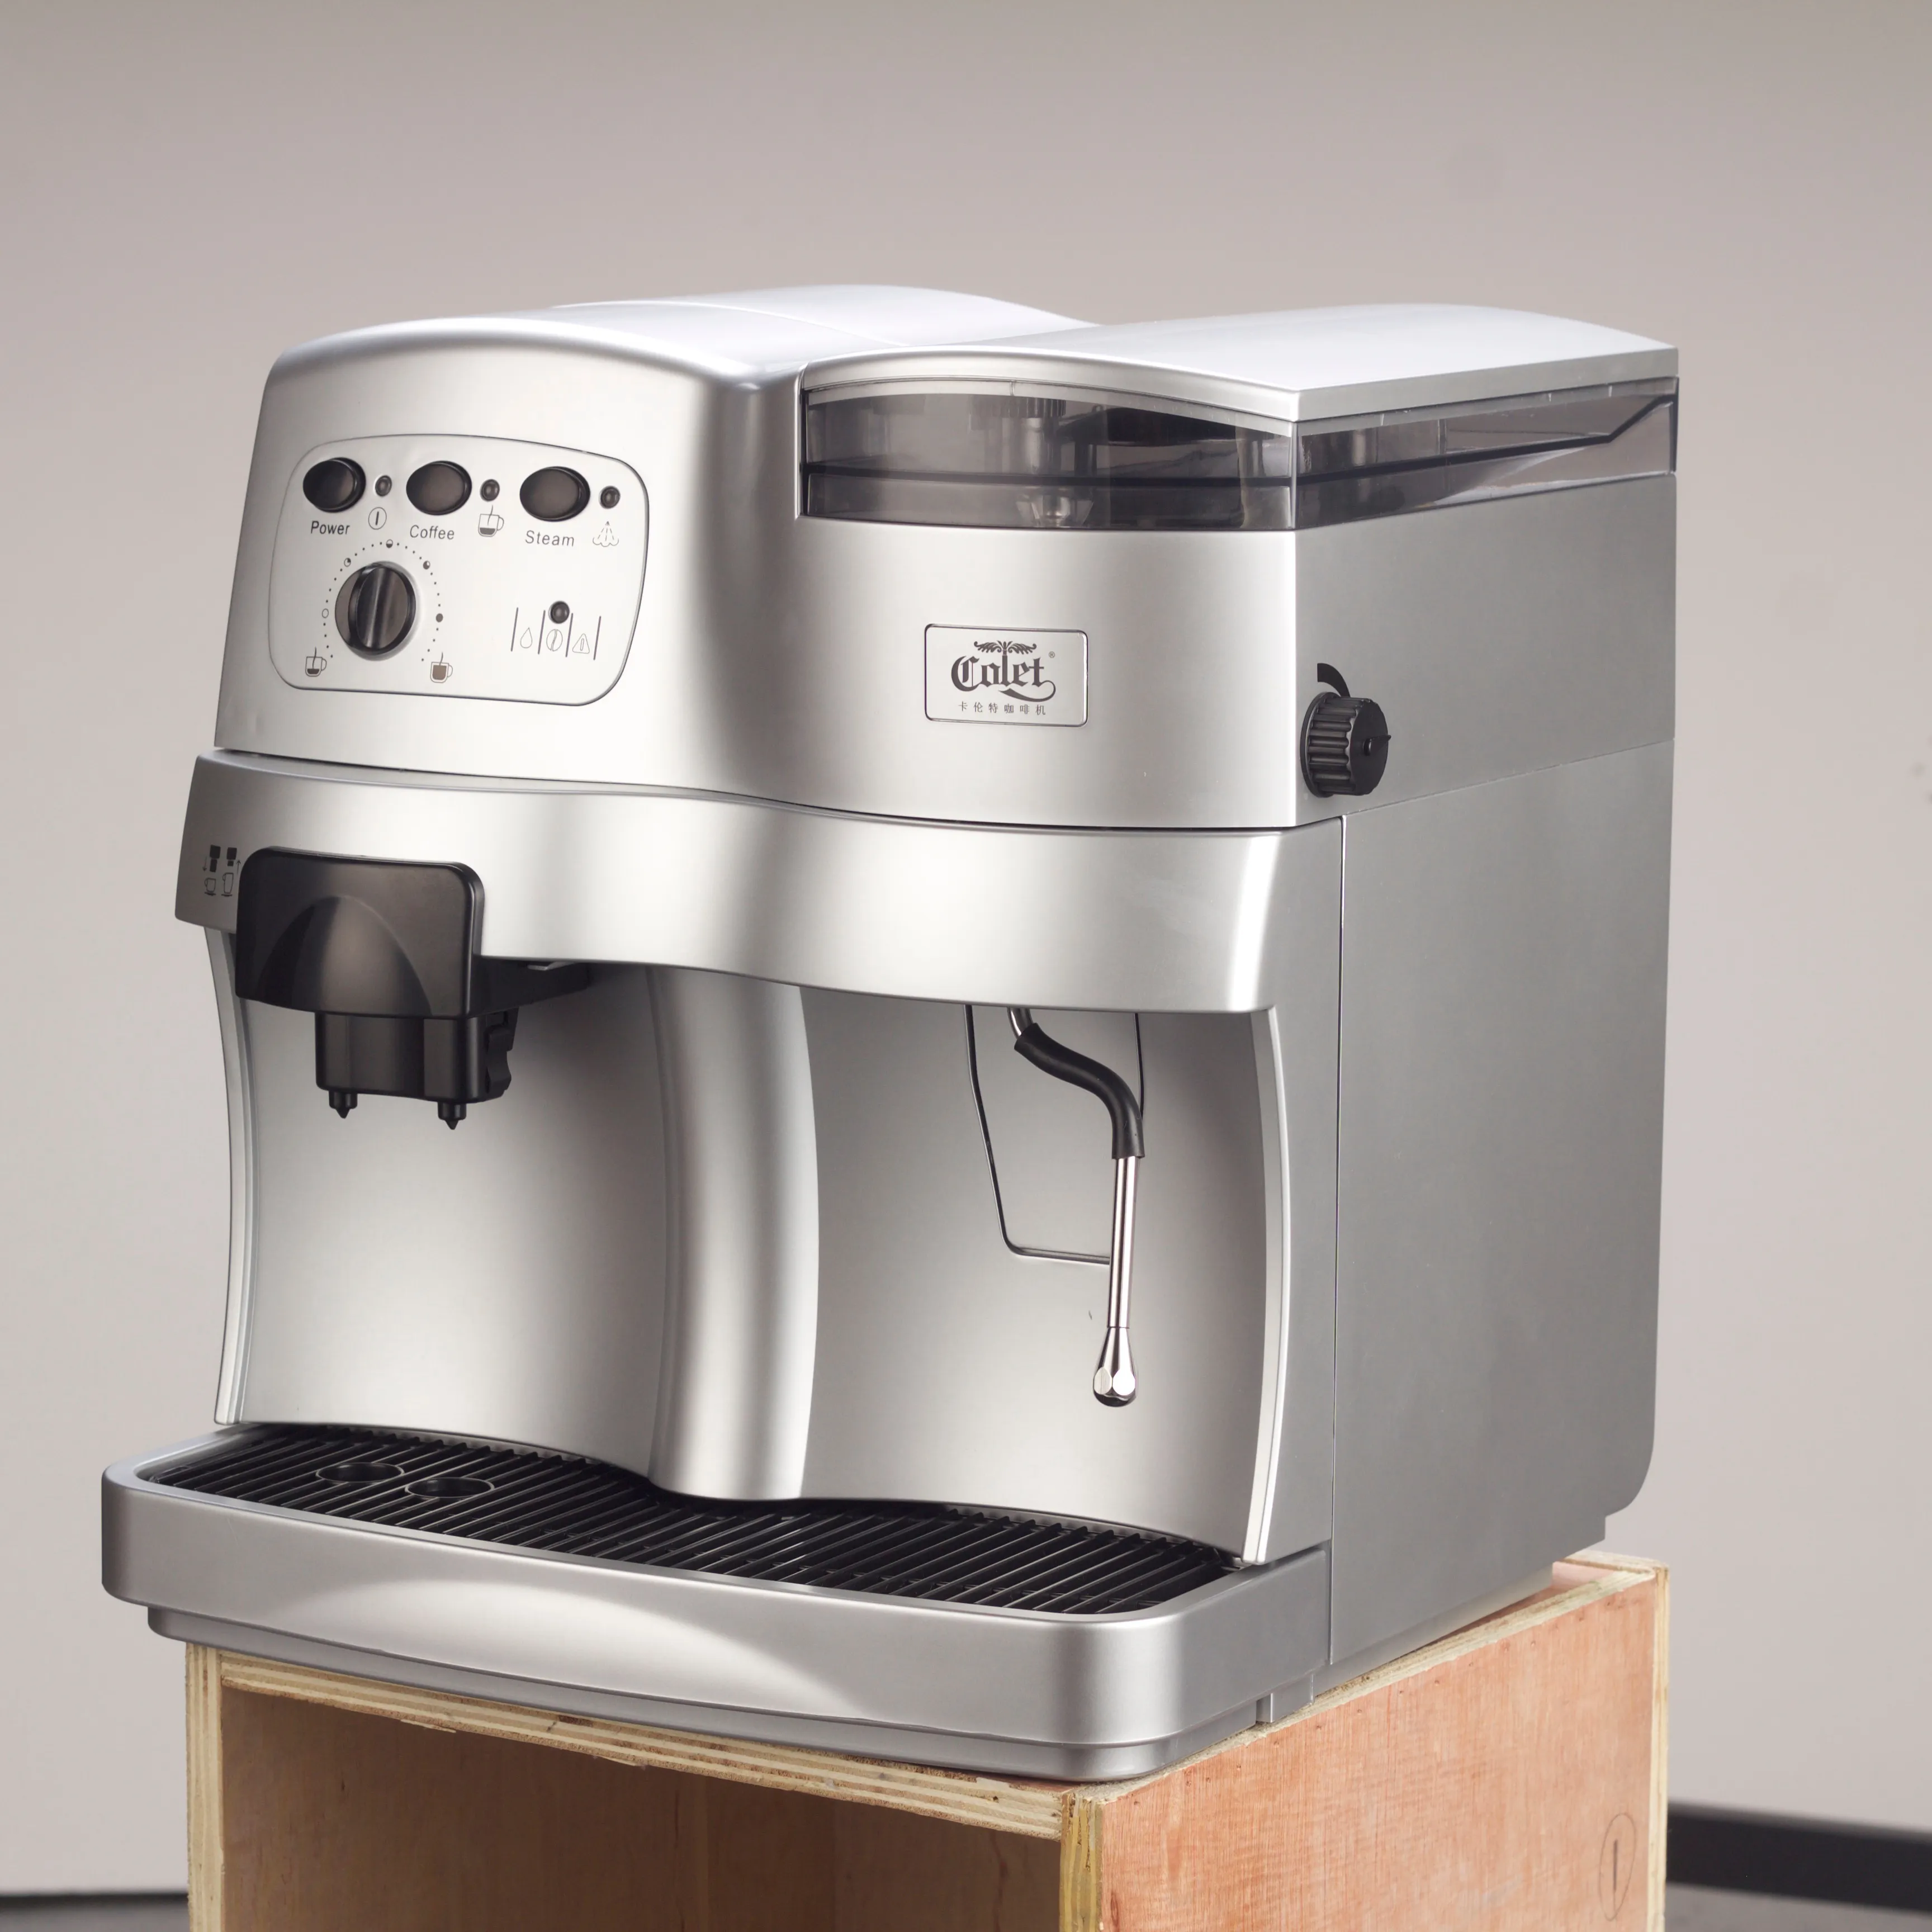 ロングバンクLB-CM-001全自動エスプレッソコーヒーメーカー自動コーヒーマシン電気12プラスチックホワイト便利2201250